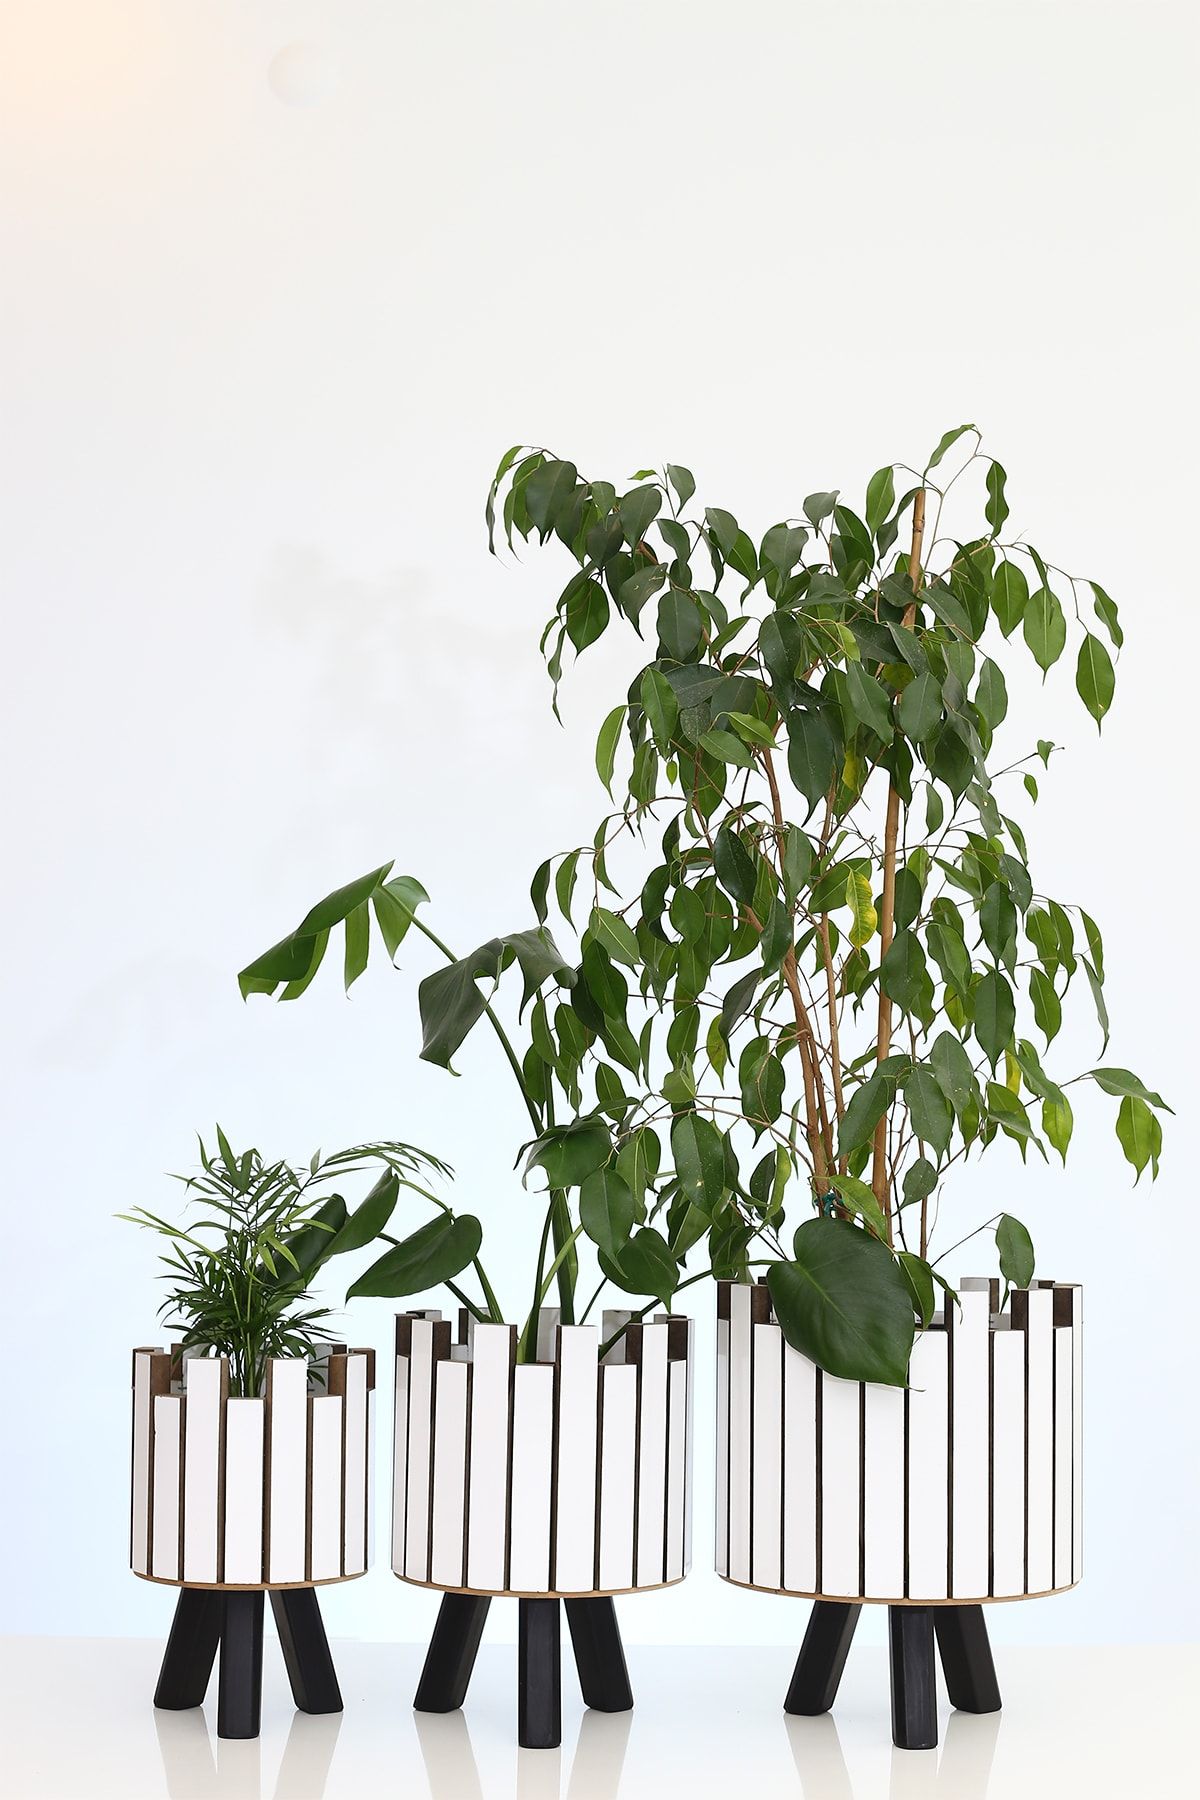 Hakan Mobilya Beyaz Ahşap Siyah Ayaklı 3'lü Kale Model Saksı Seti Dekoratif Çiçeklik Balkon Bahçe Ahşap Saksılık